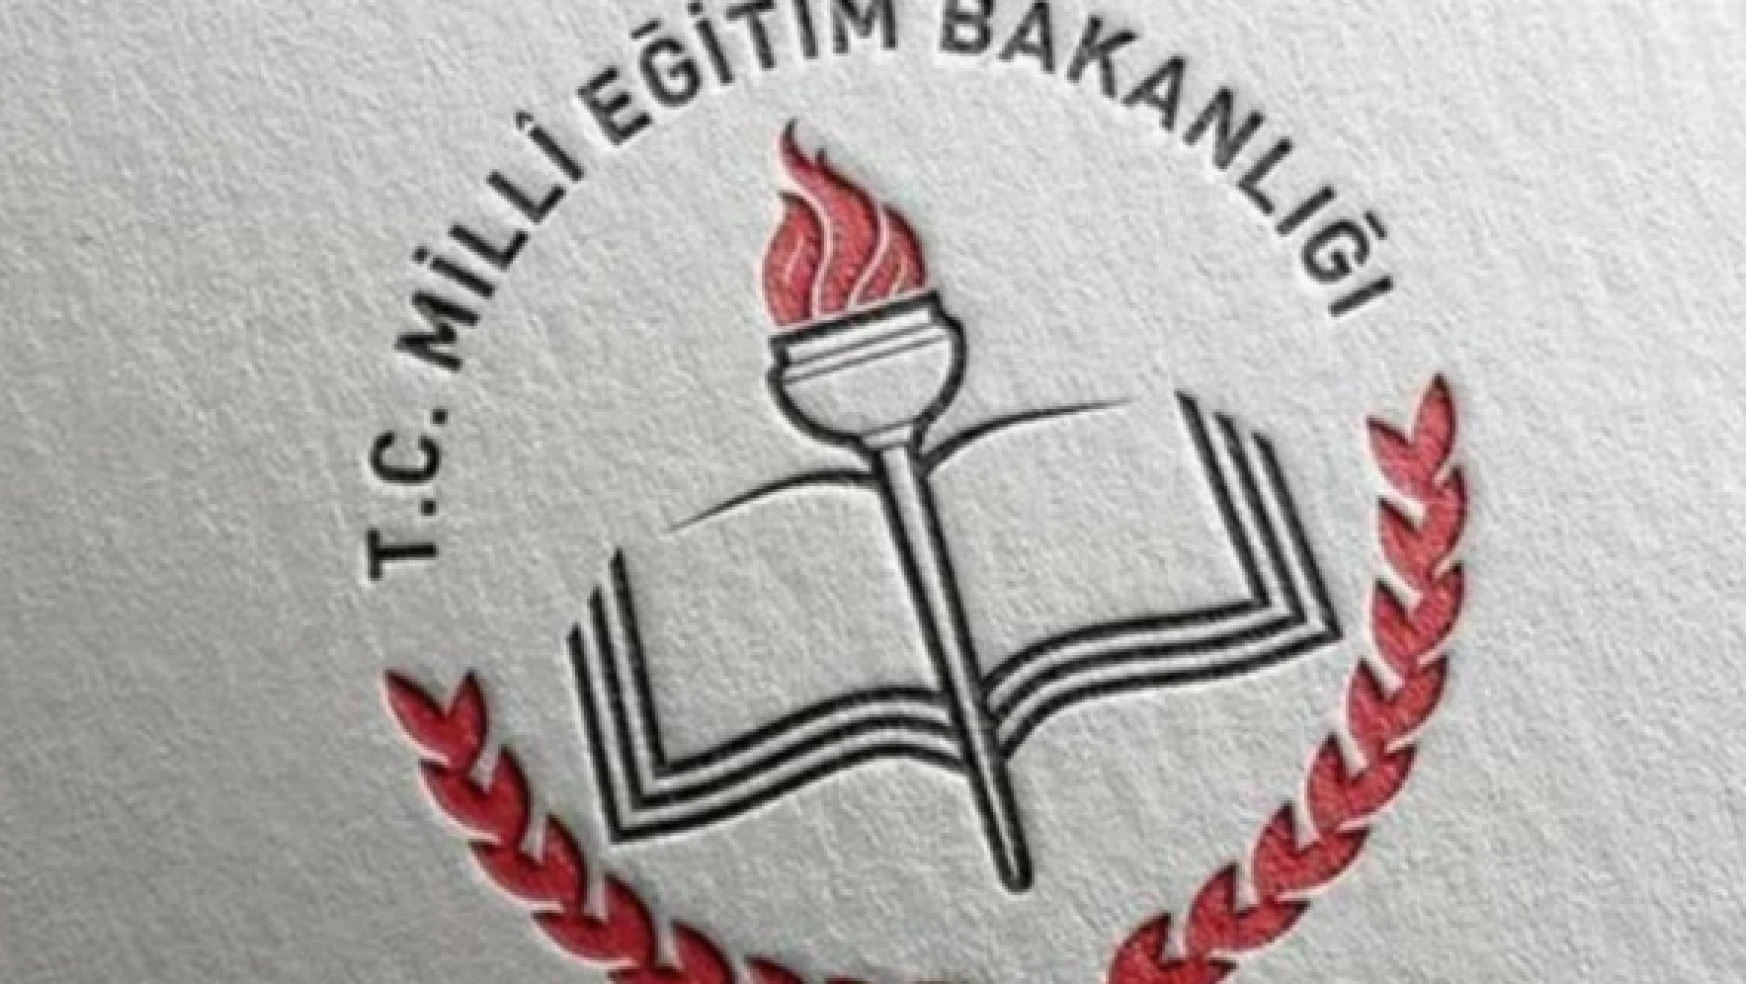 MEB: &quotKılıçdaroğlu, kamuoyunu yanlış yönlendiriyor "